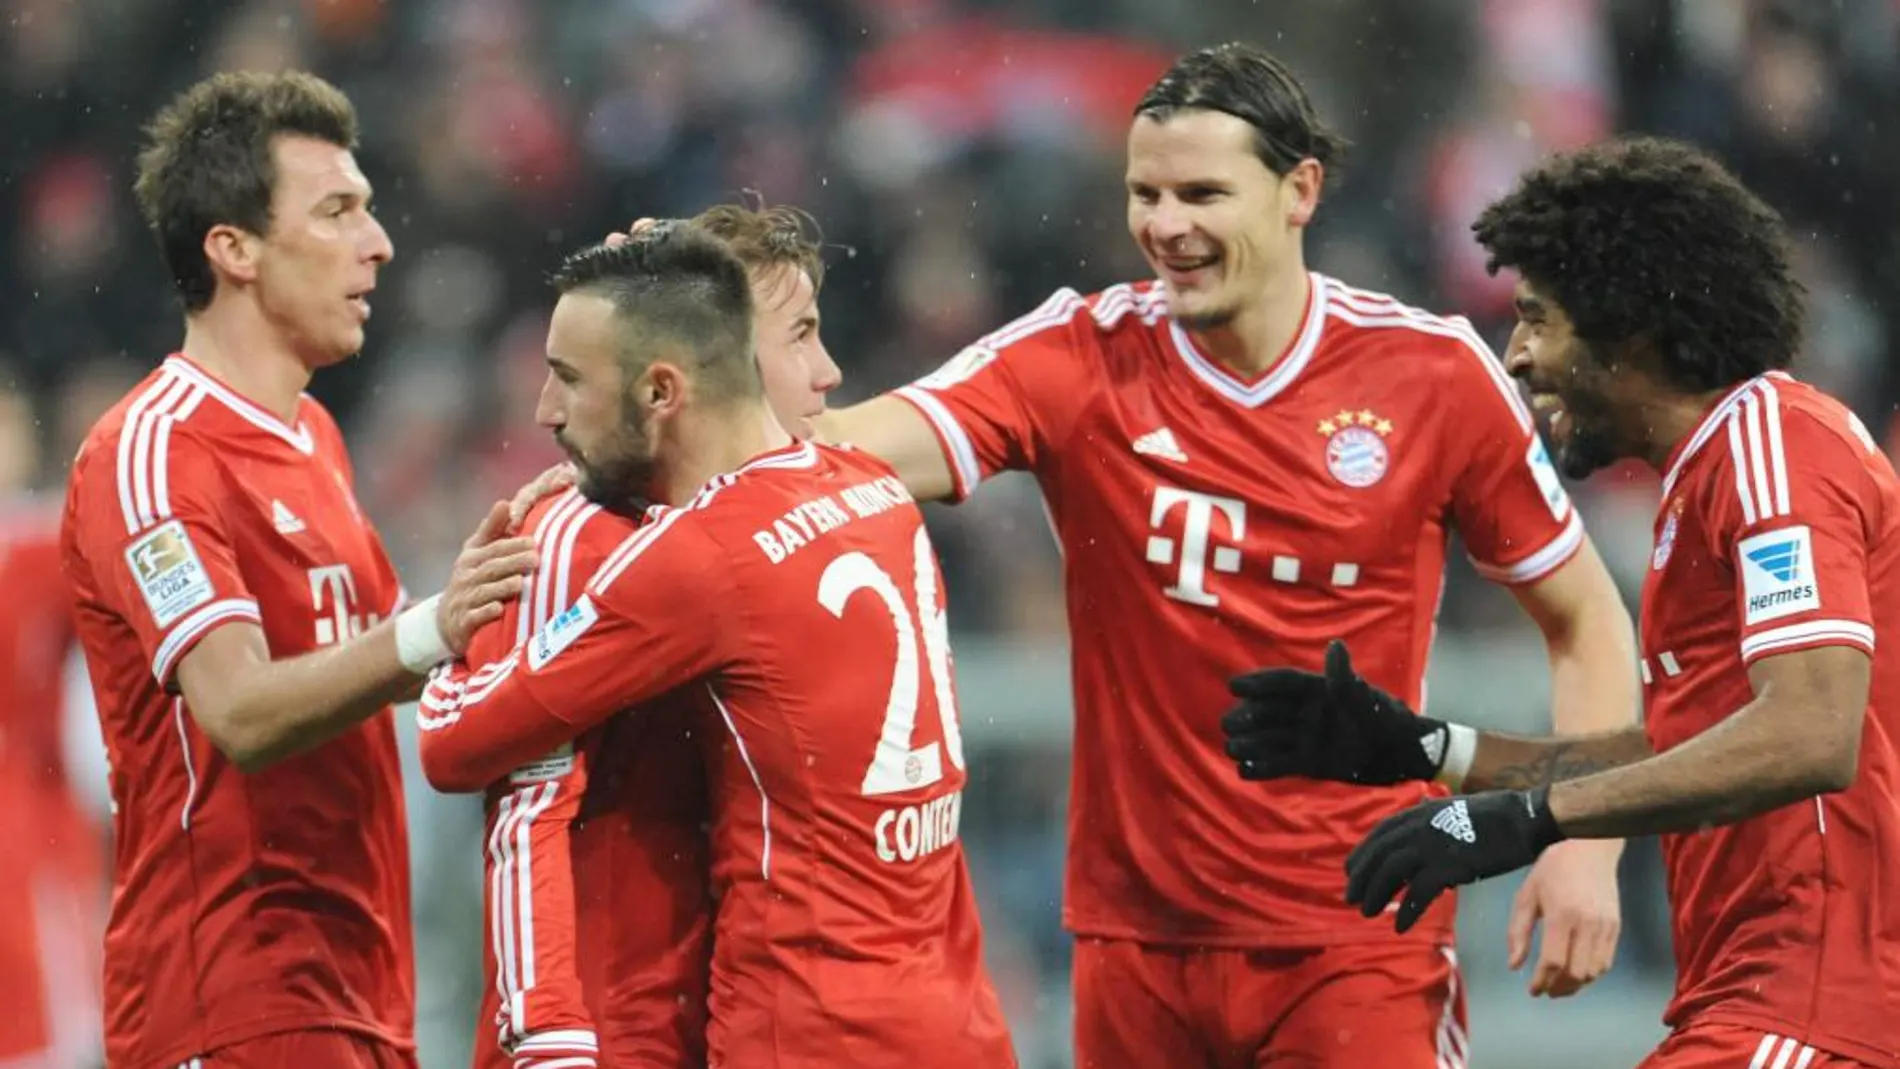 Los jugadores del Bayern Mandzukic (L-R), Goetze, Contento, van Buyten y Dante celebran un gol en su partido de hoy ante el Hamburgo.